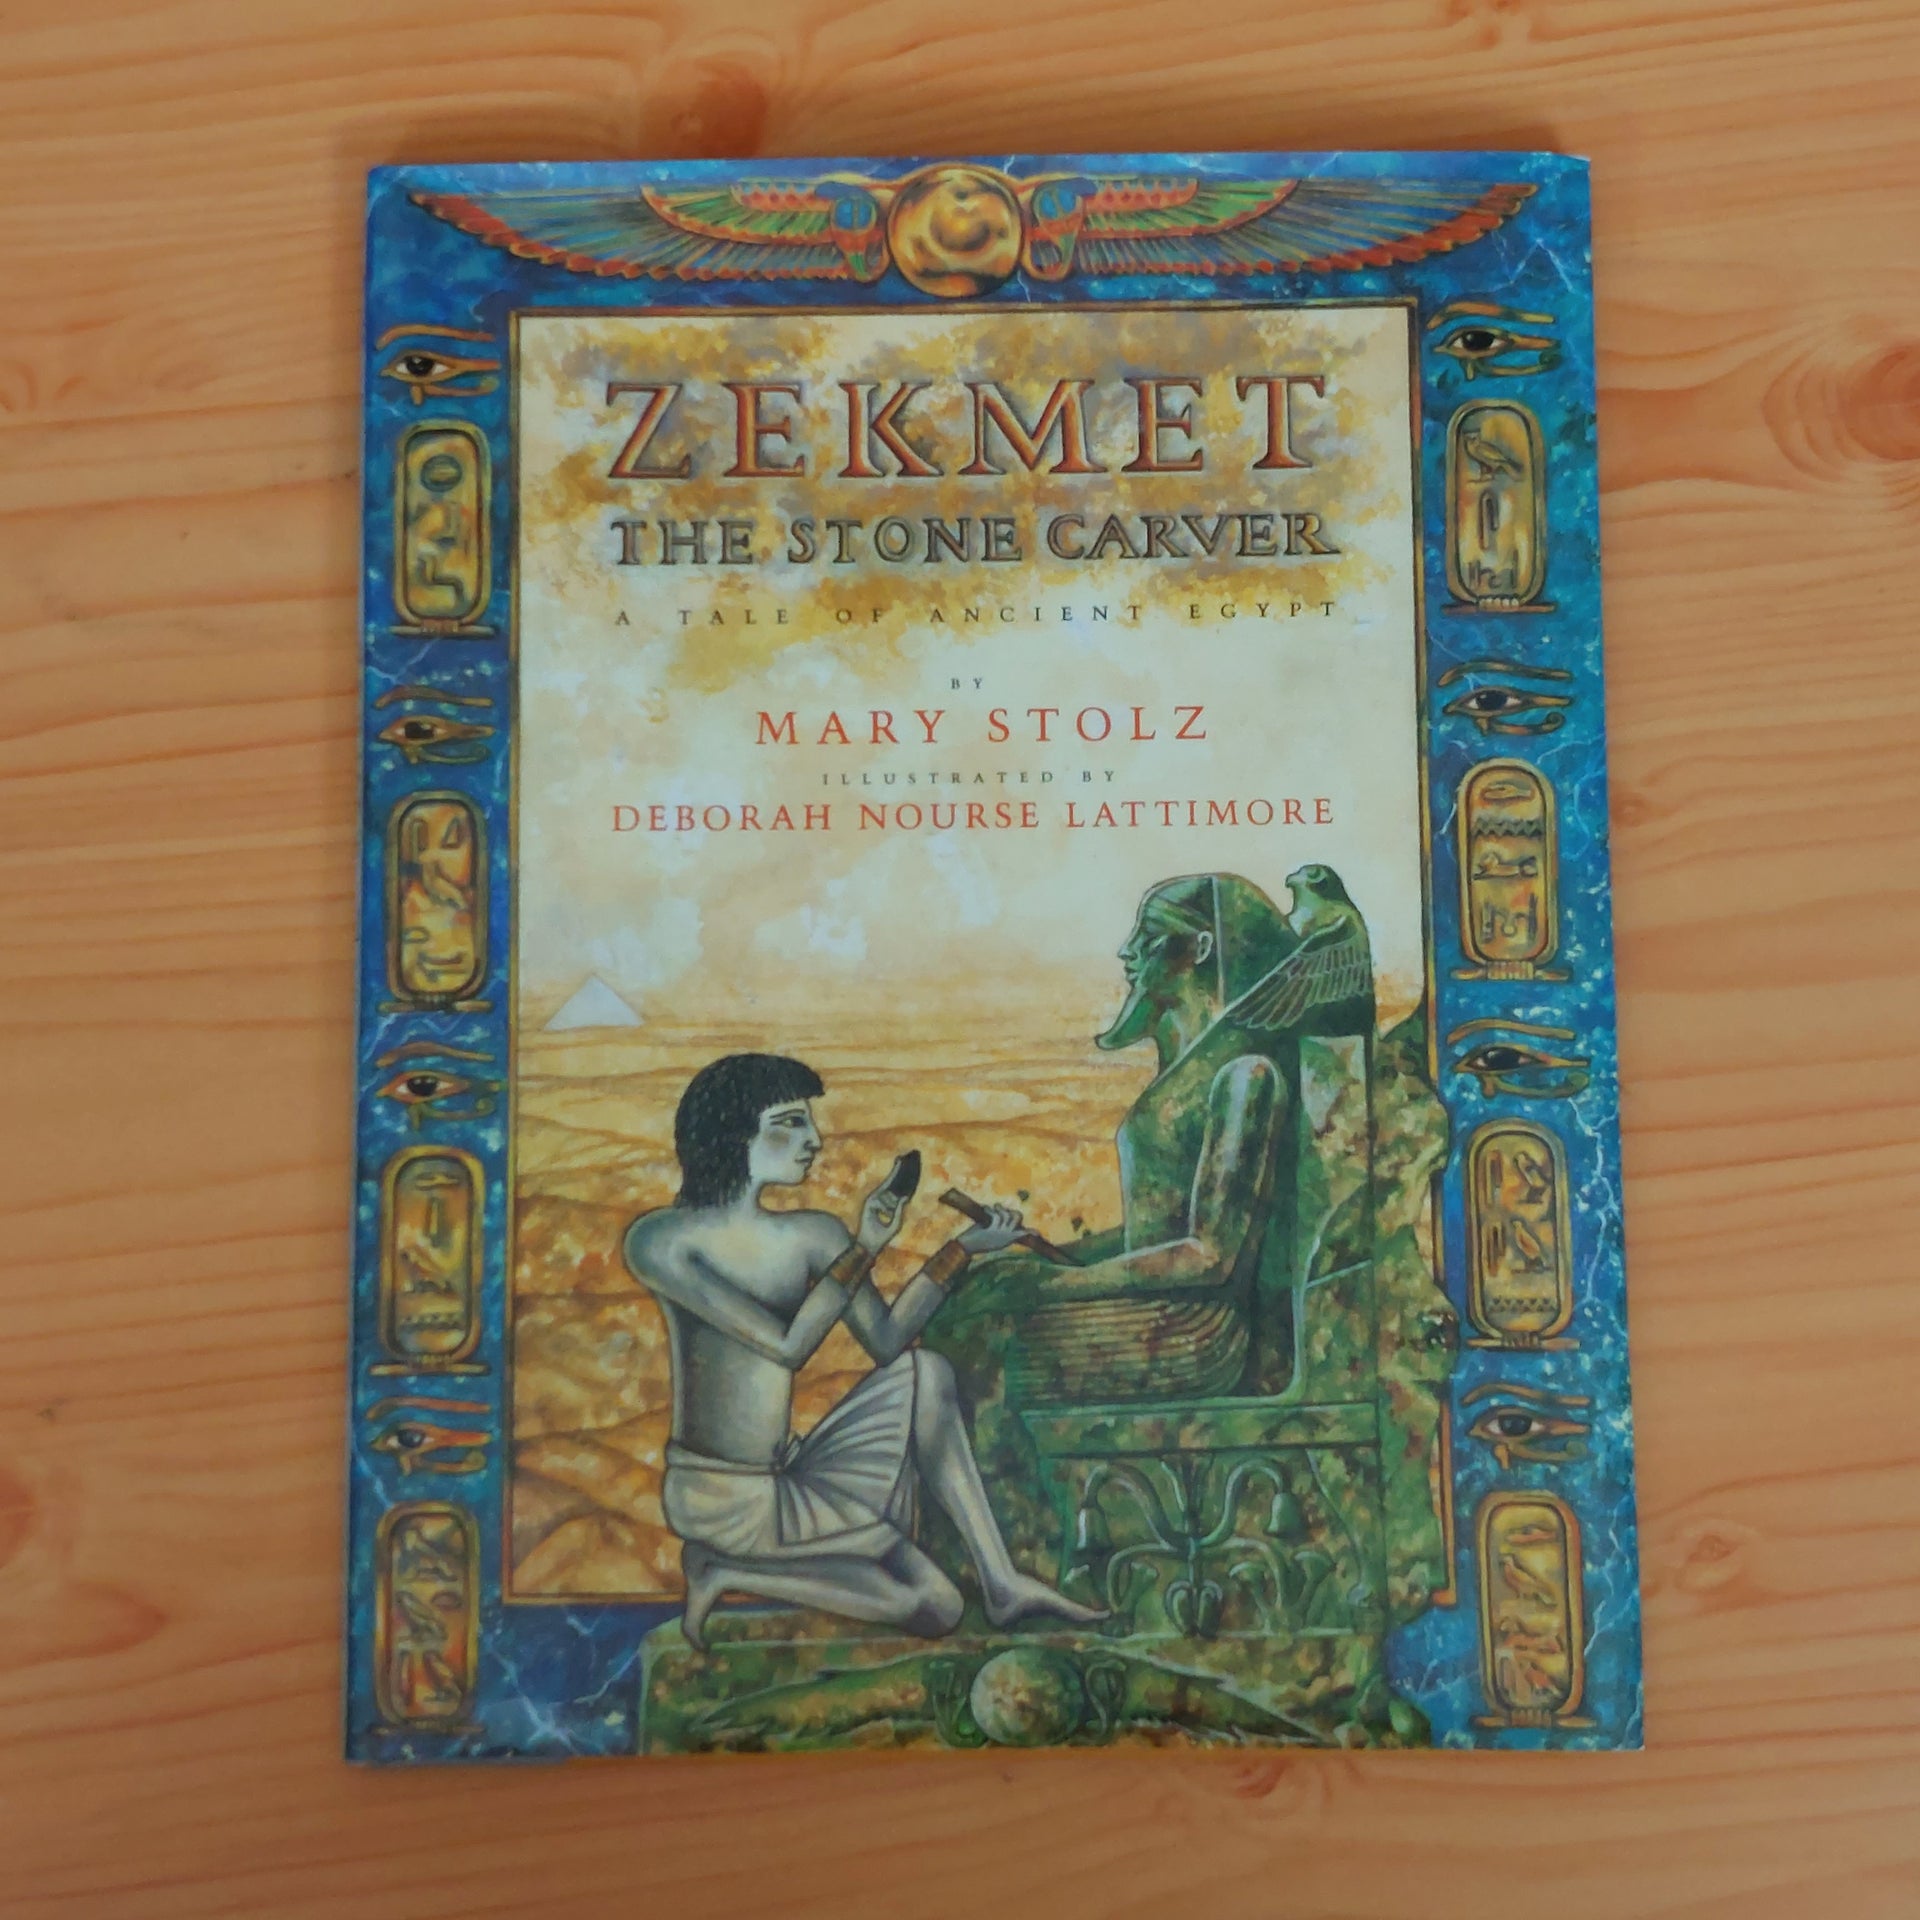 Zekmet the stone carver book